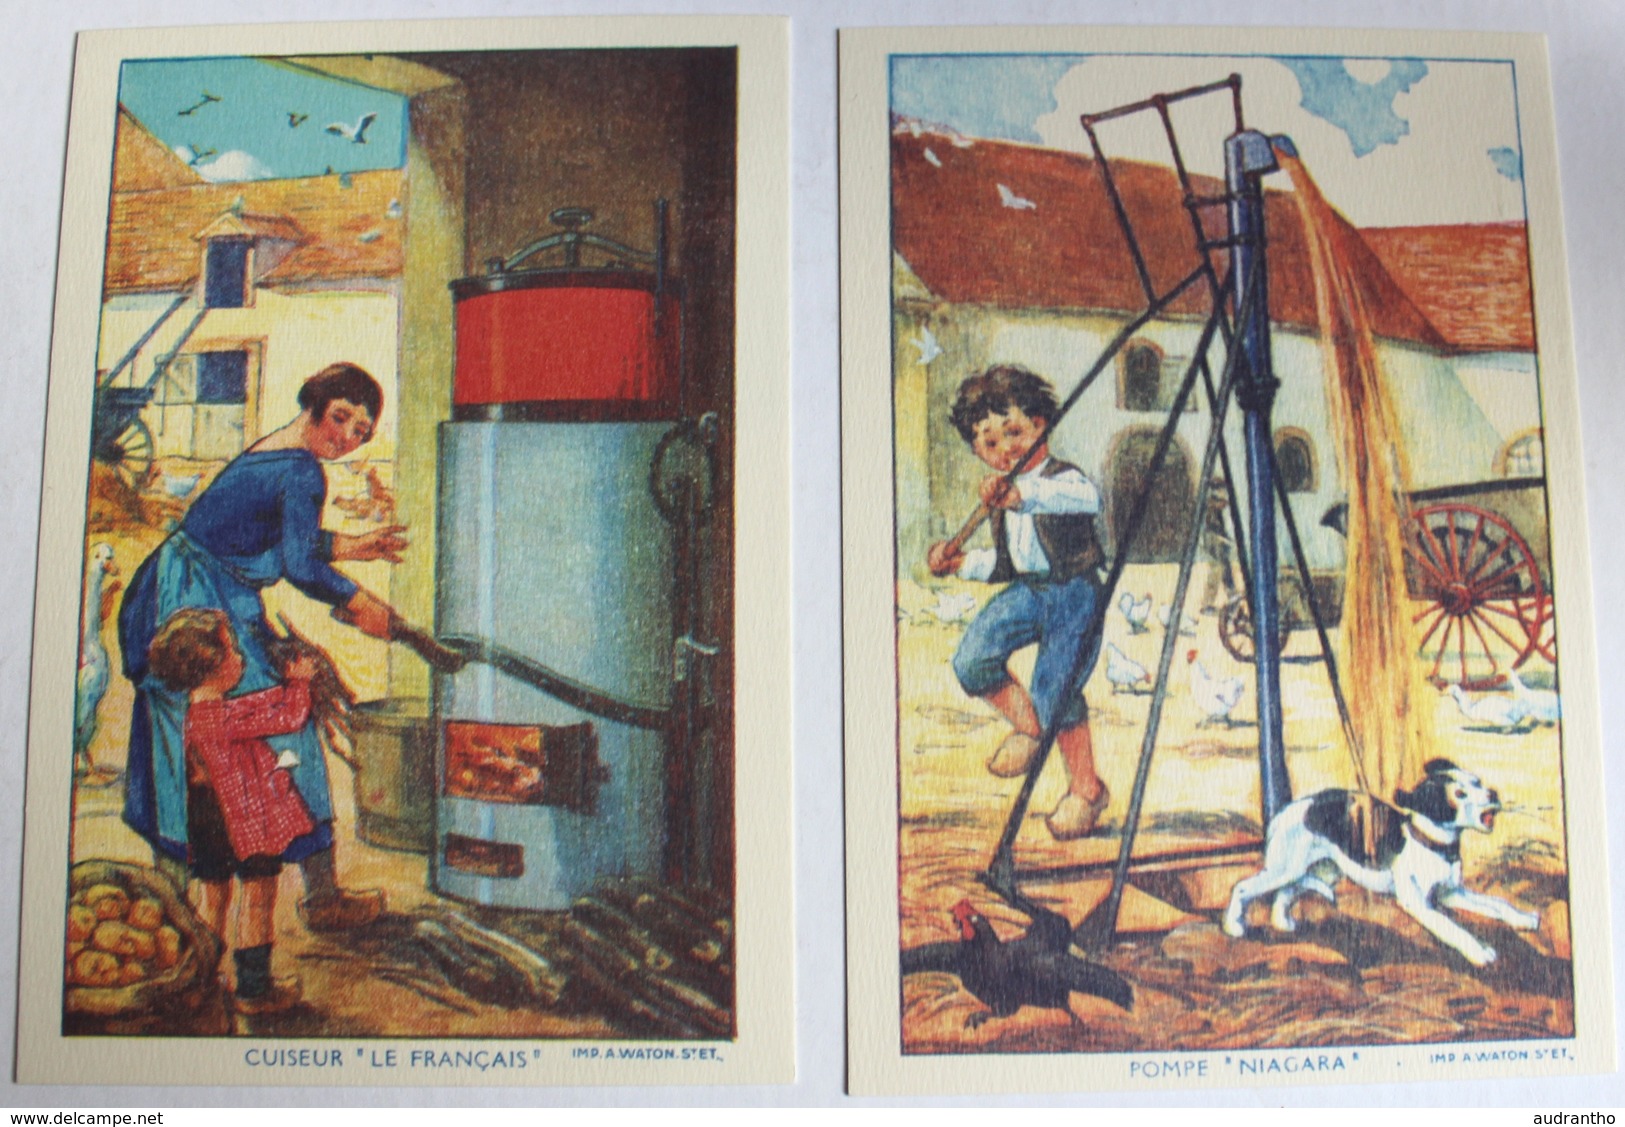 10 cartes postales numérotées Saint Dizier entreprise Ronot chaudronnerie centenaire 2005 machine agricole